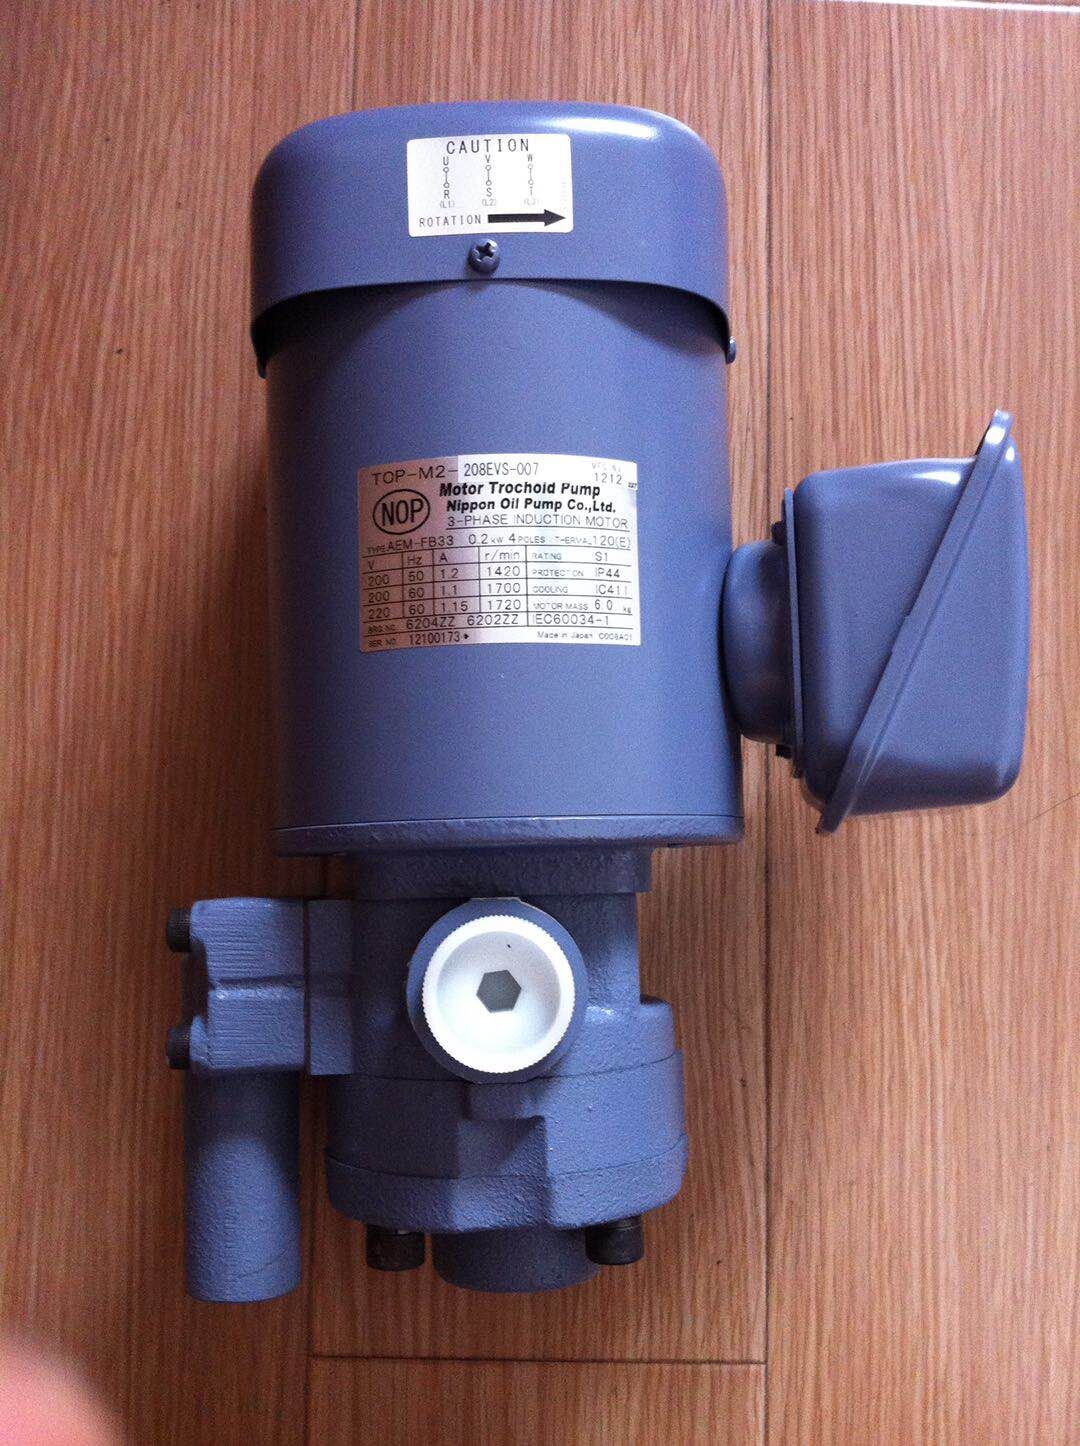 TOP-1RA-300 NOP油泵 TOP-M2-208EVS-008 TFO-K 0.2KW电机马达